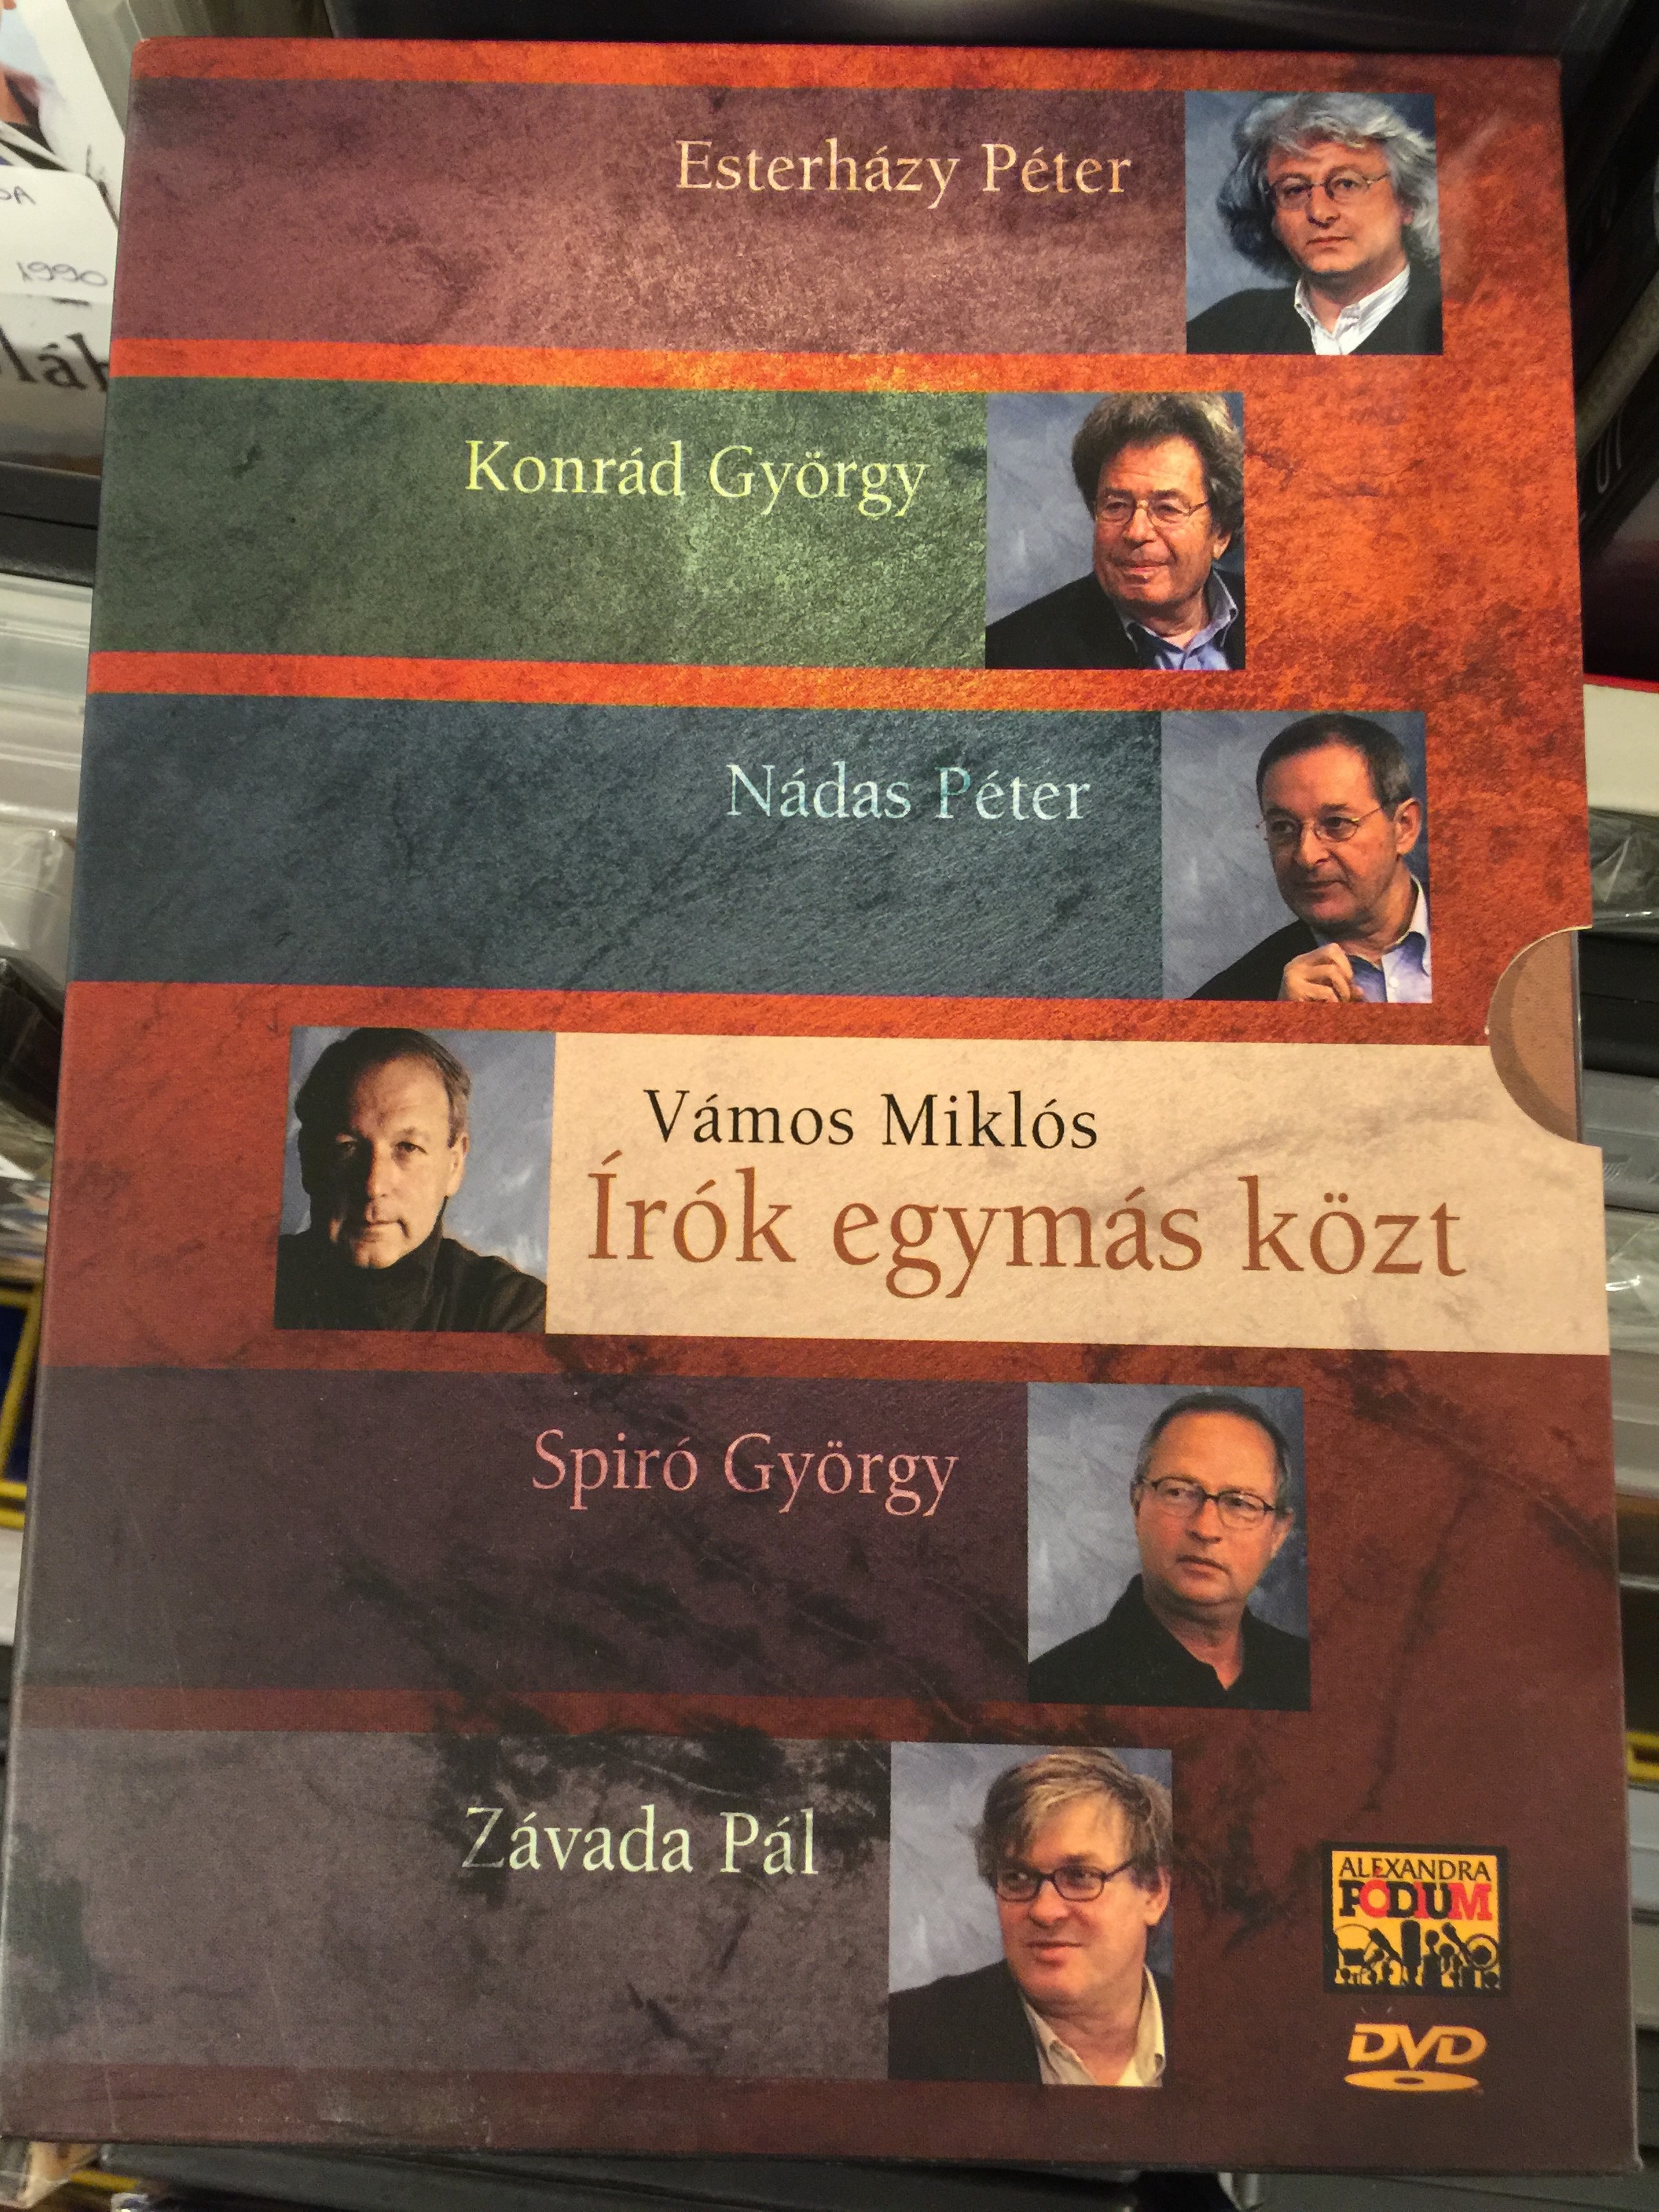 Írók egymás közt DVD 2007 Hungarian Writers among themselves  1.JPG